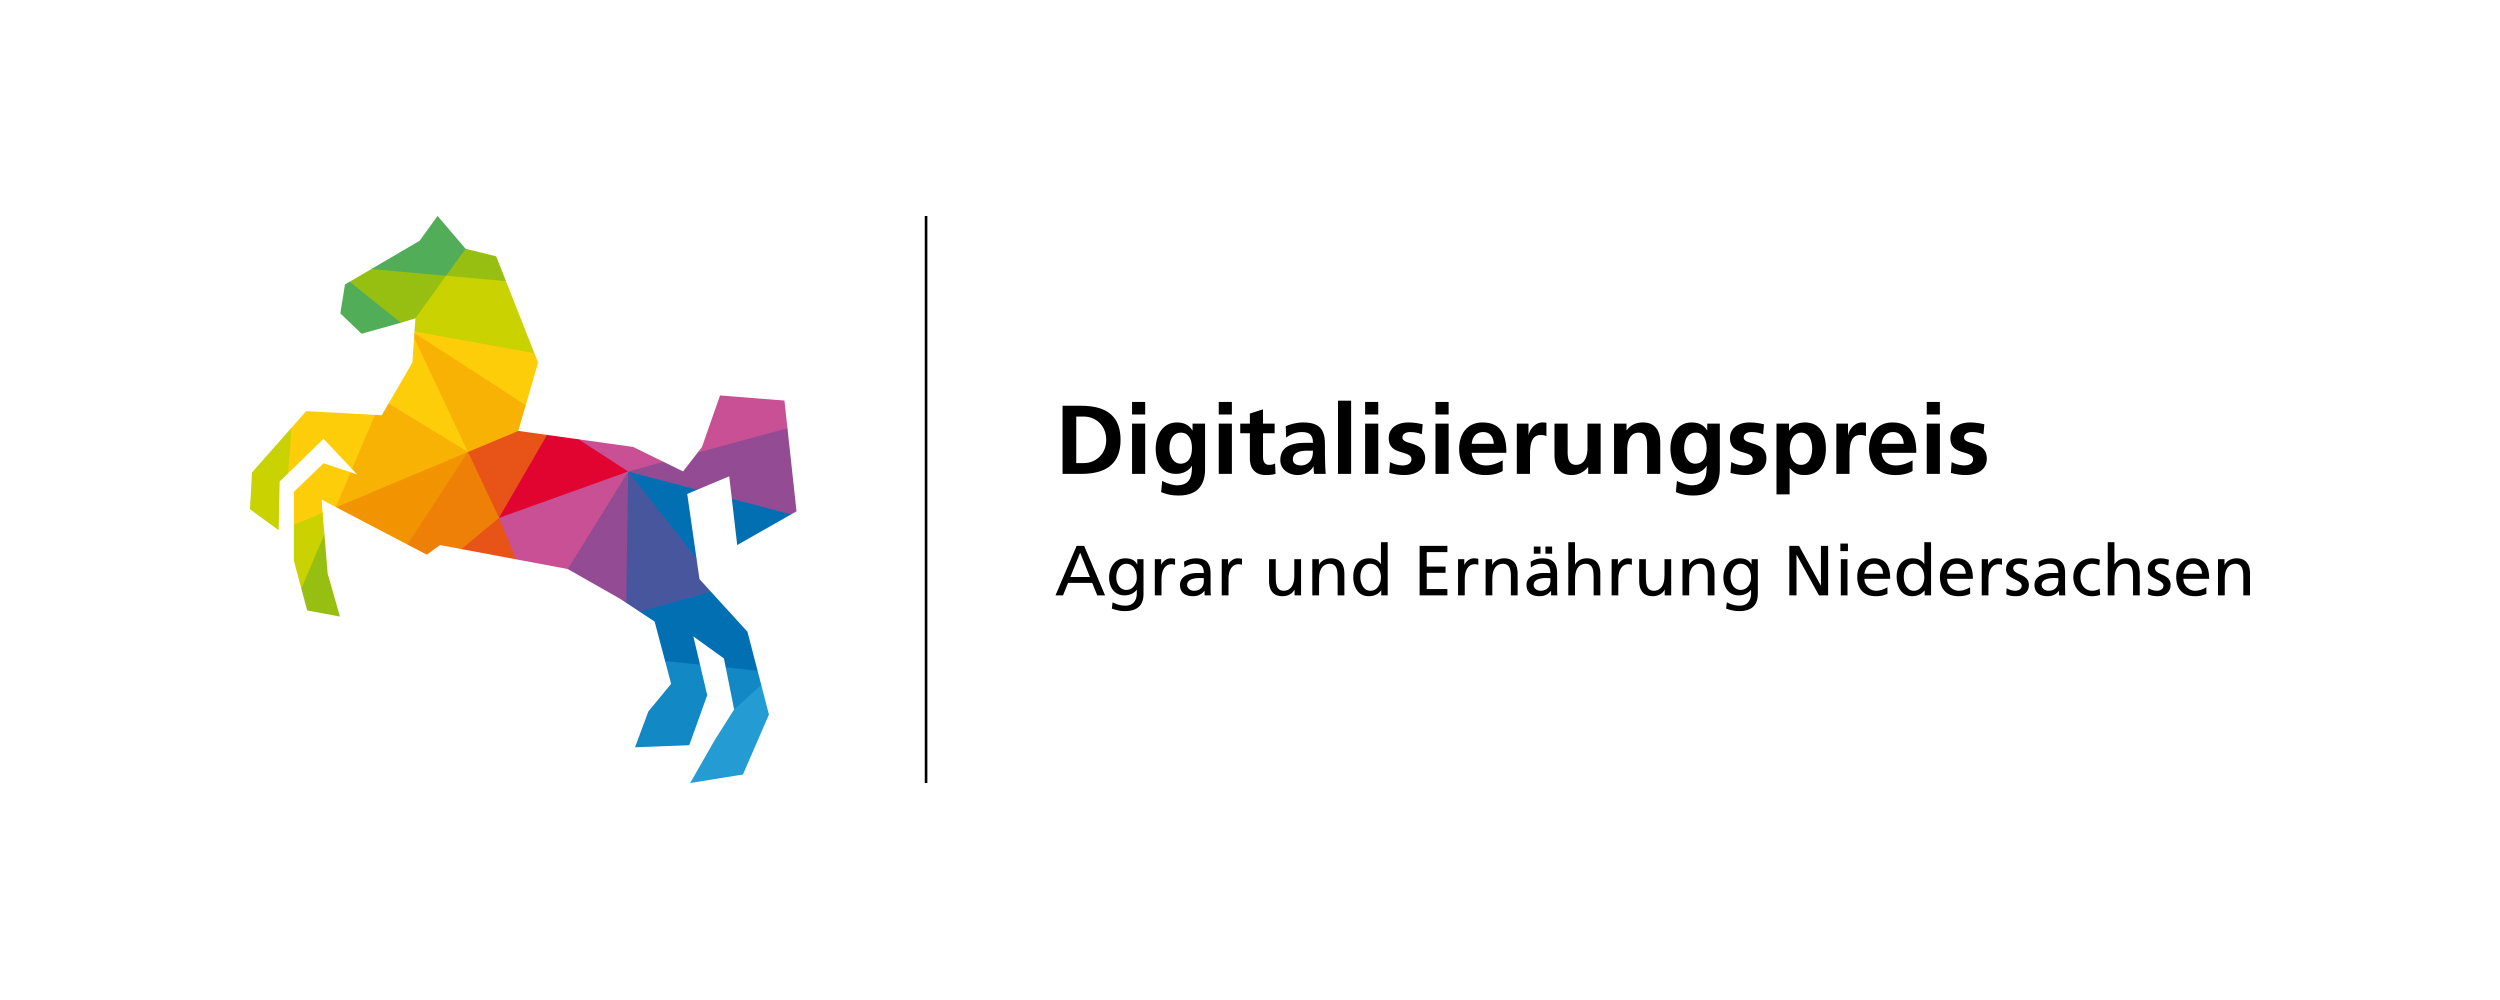 Digitalisierungspreis Agrar und Ernährung Niedersachsen